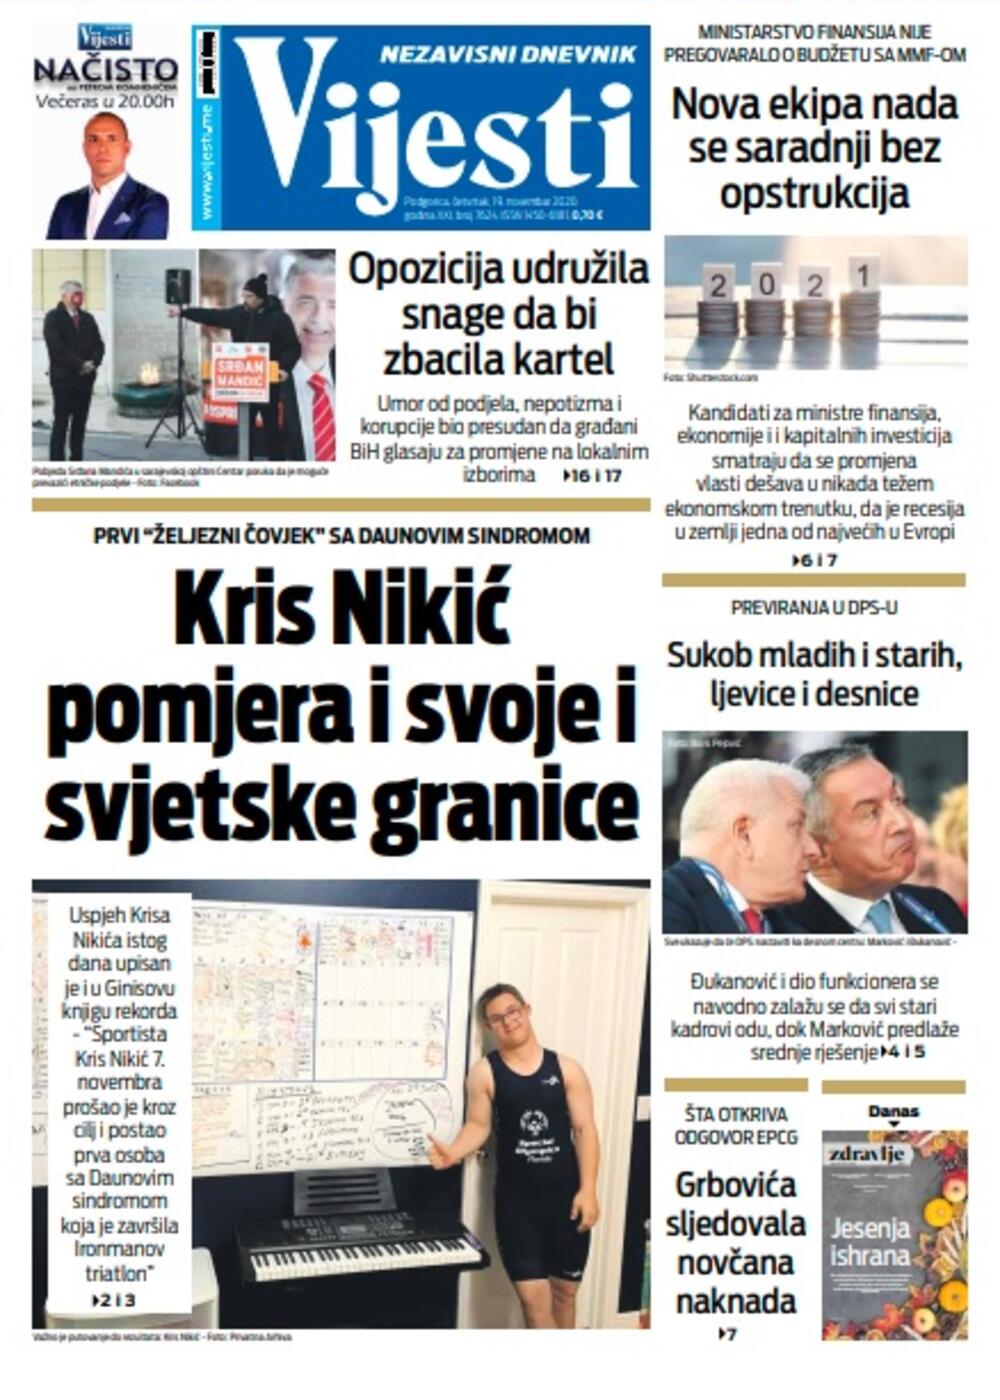 Naslovna strana "Vijesti" za četvrtak 19. novembar 2020. godine, Foto: Vijesti